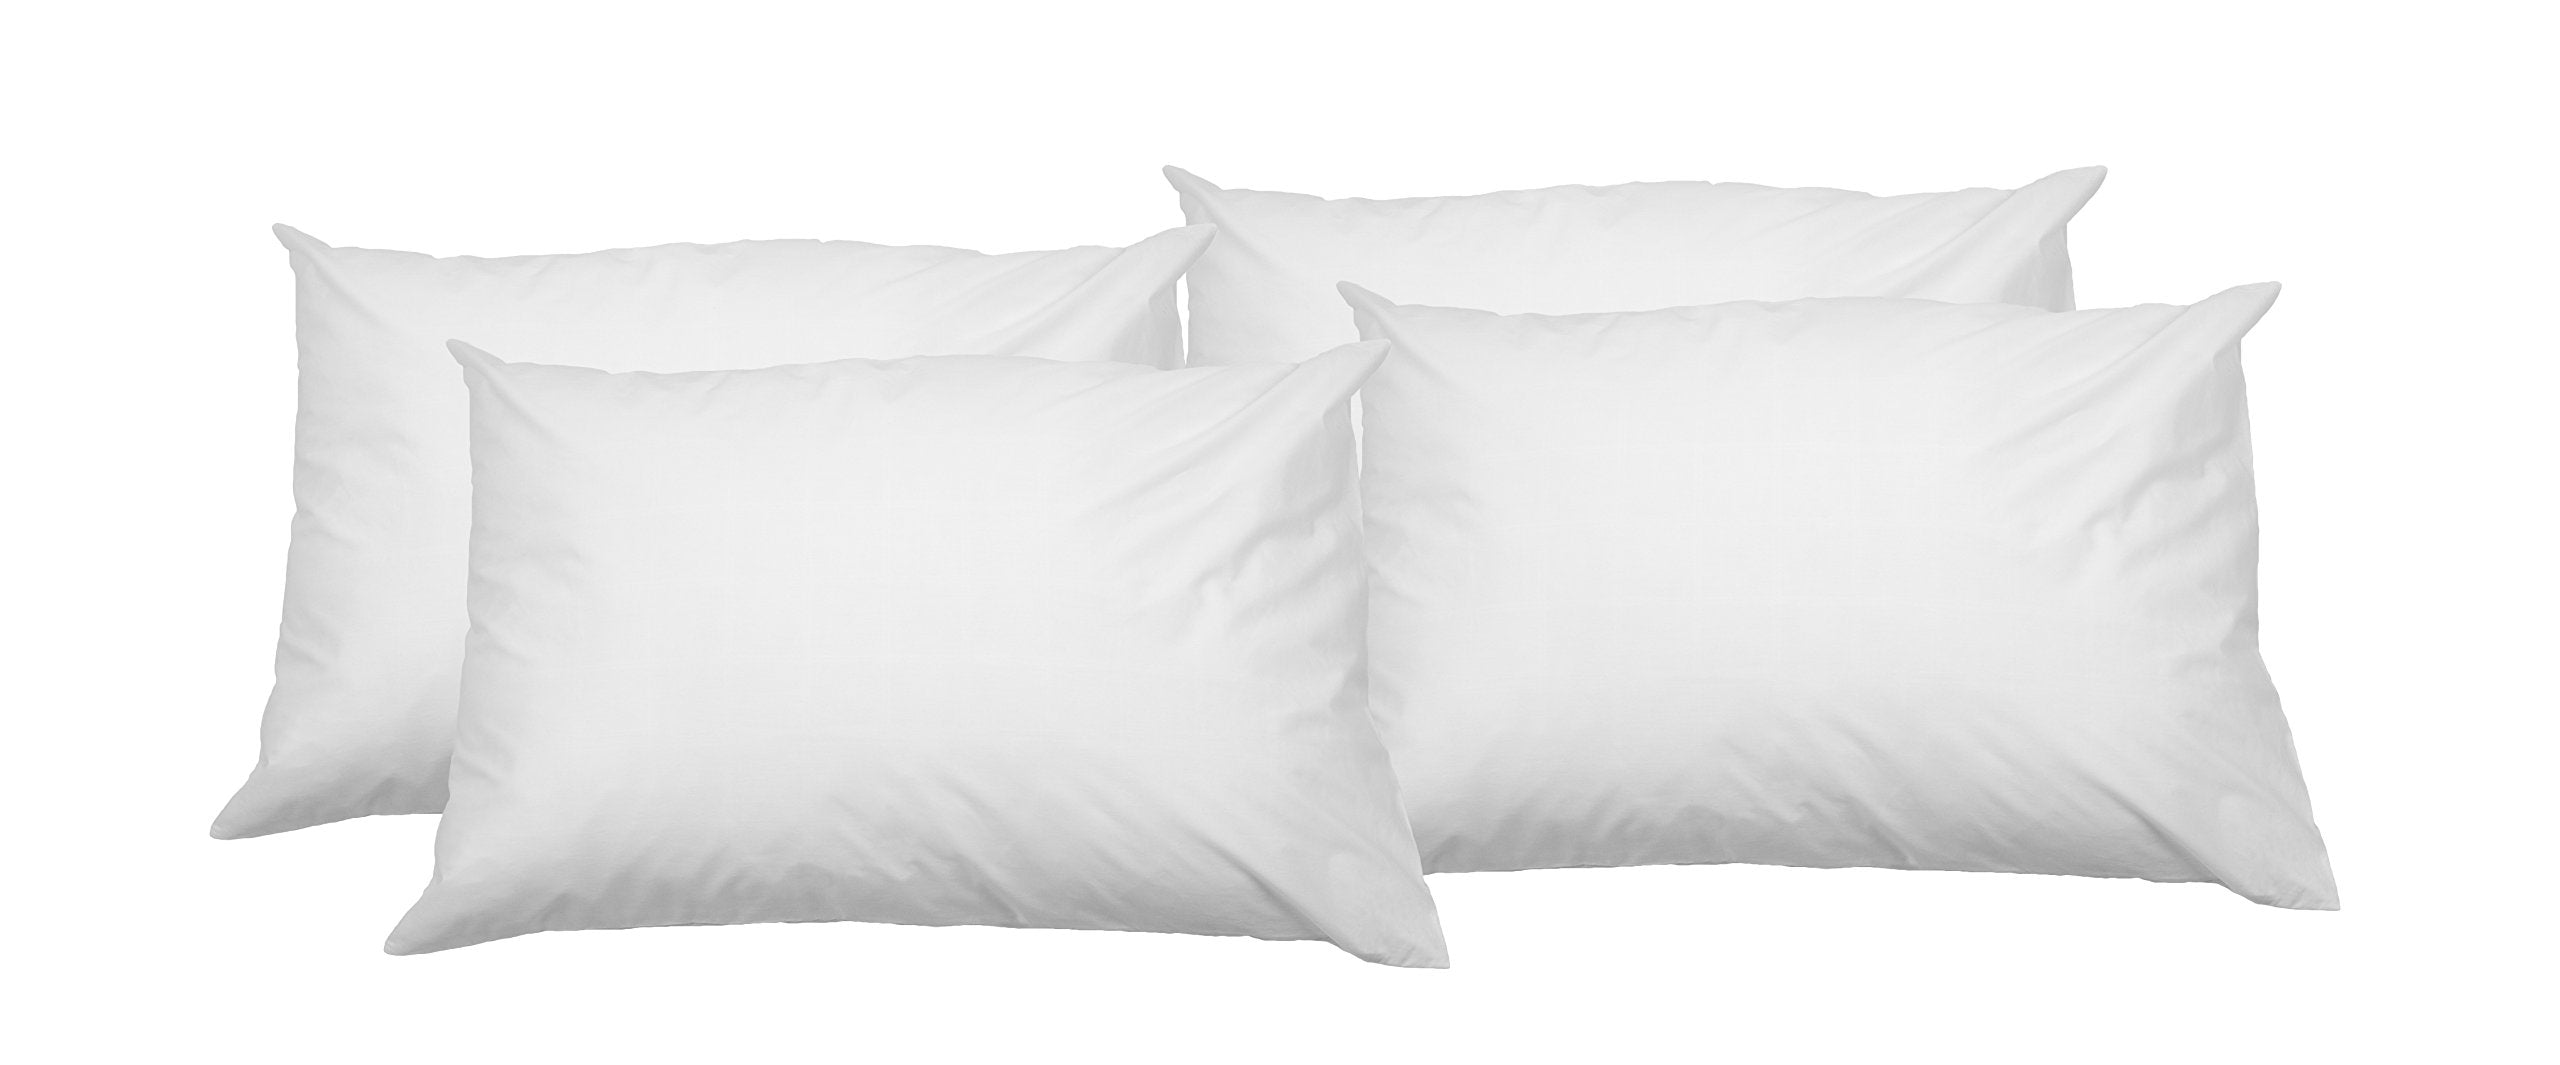 Amazon Basics 100% Cotton Soft Pillow Cases with Zip, 50 x 80 cm, 4pcs